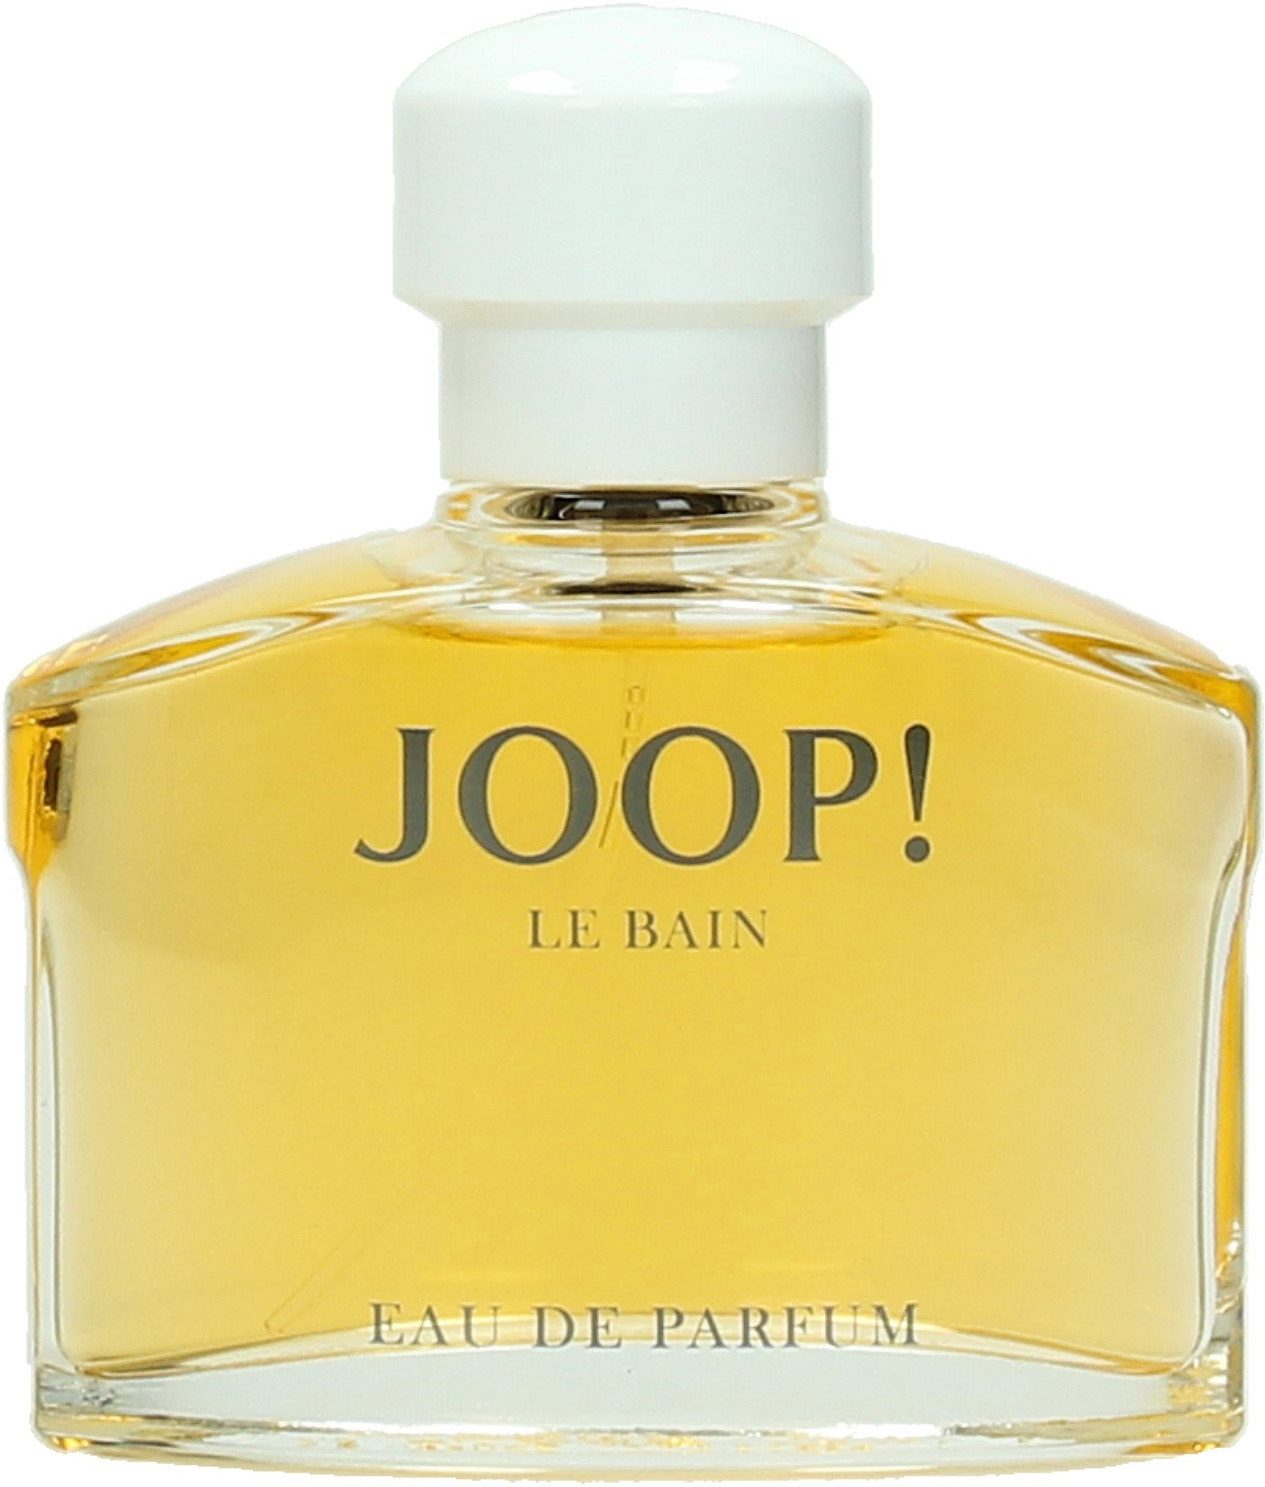 Günstiges Parfum online kaufen » Reduziert im SALE | OTTO